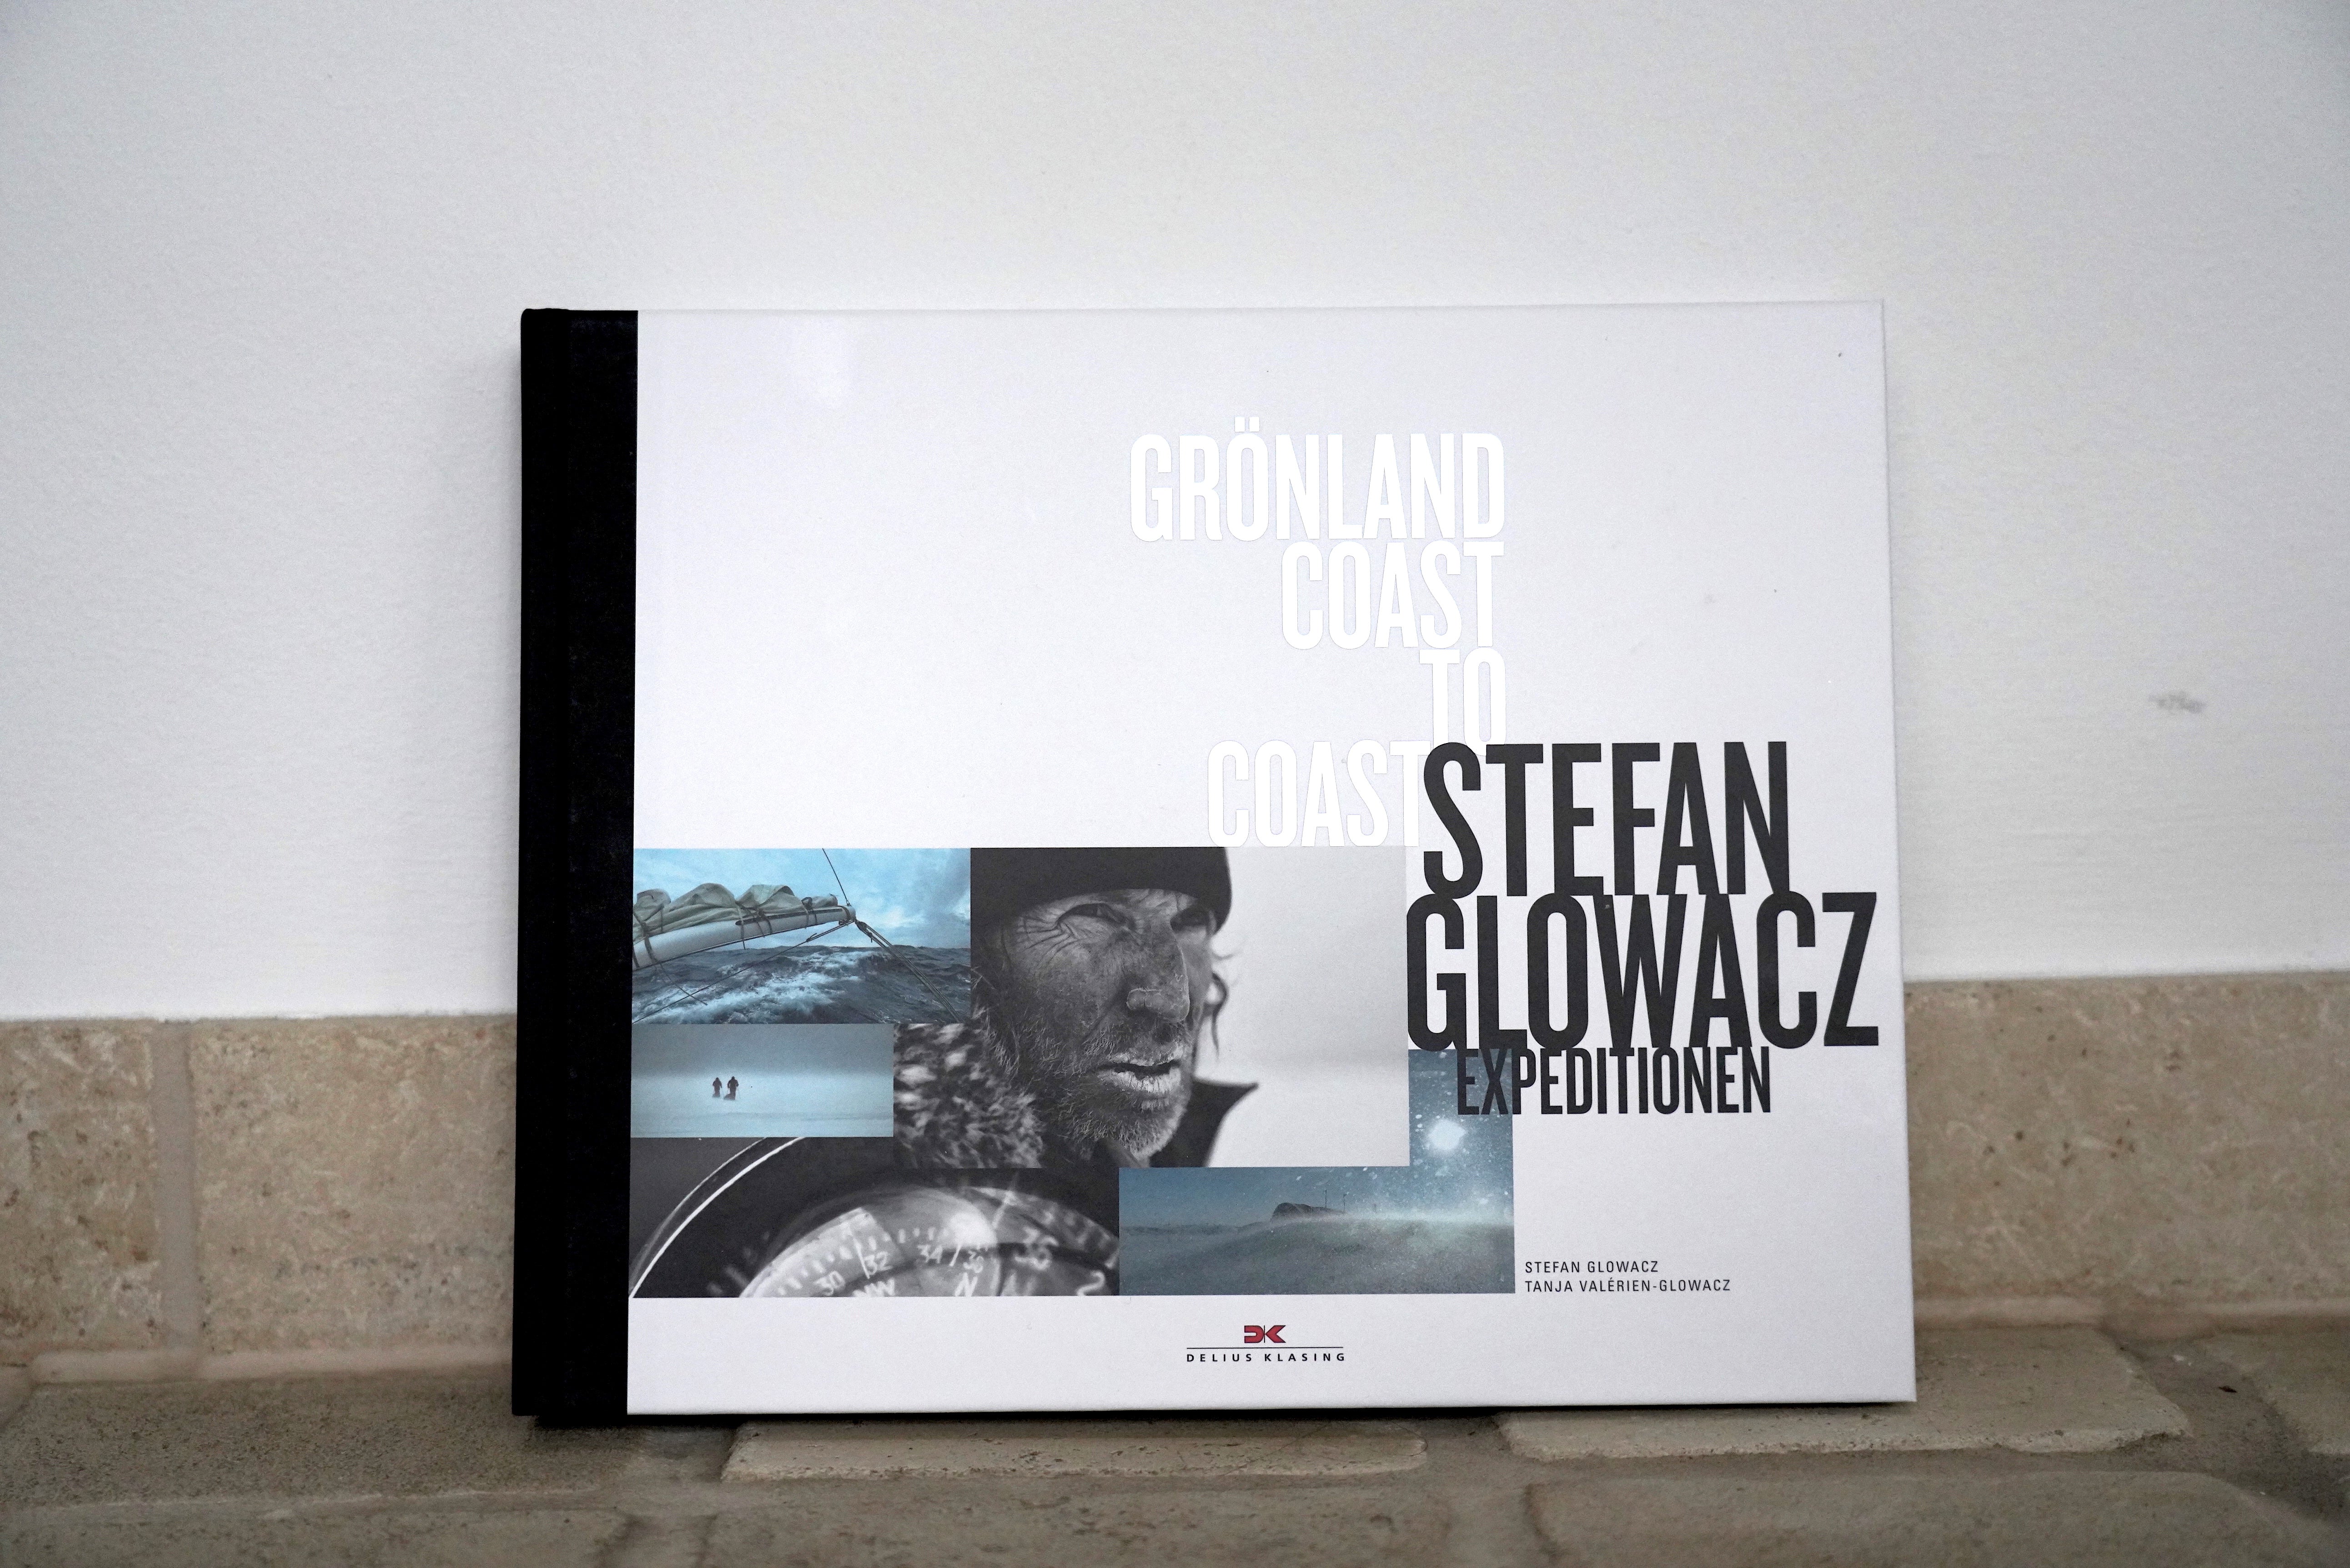 STEFAN GLOWACZ - GRÖNLAND, COAST TO COAST